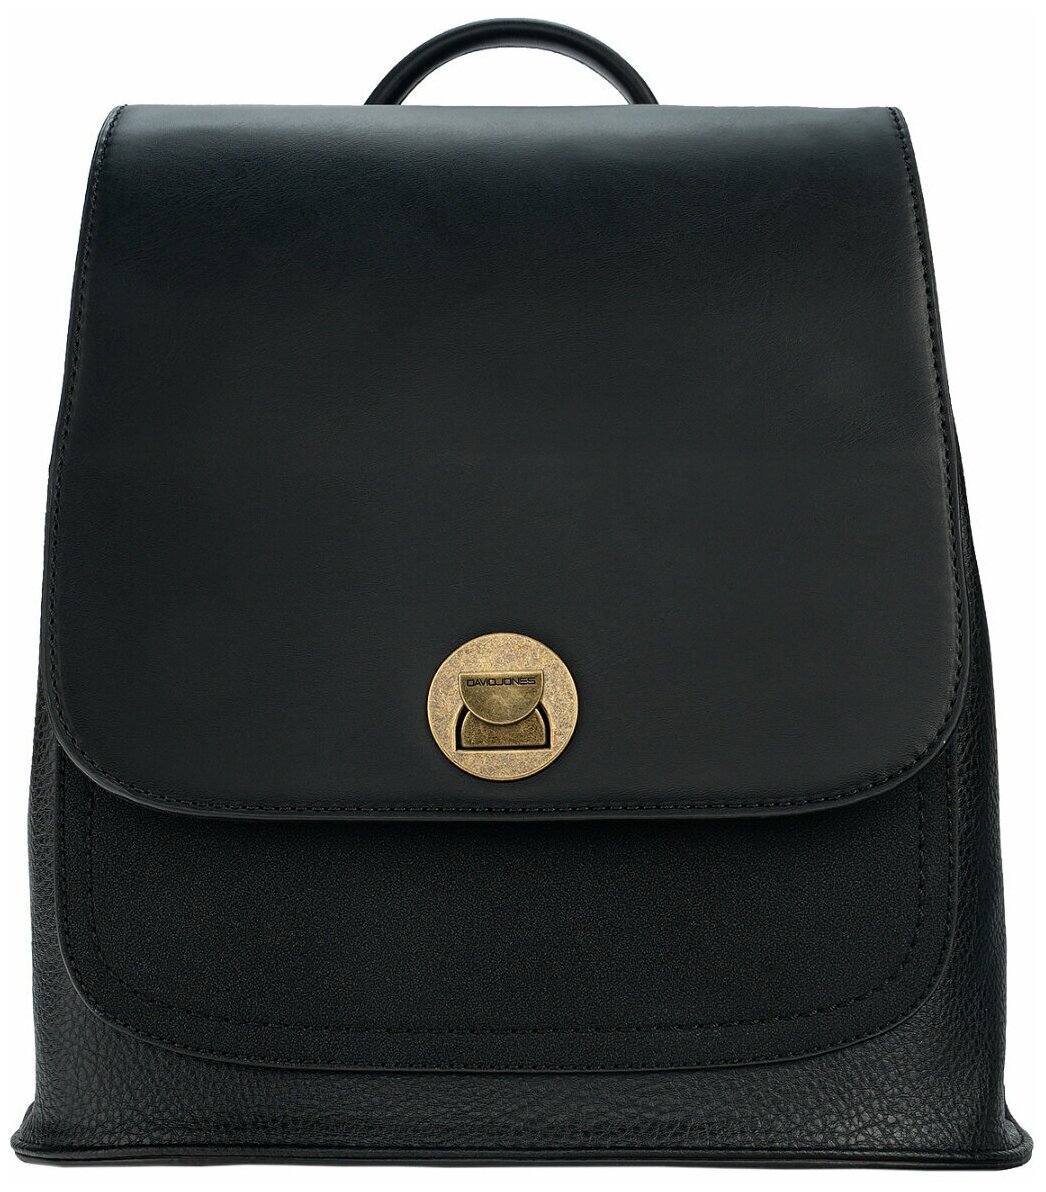 Стильная, влагозащитная, надежная и практичная женская сумка из экокожи David Jones CM5933K/BLACK